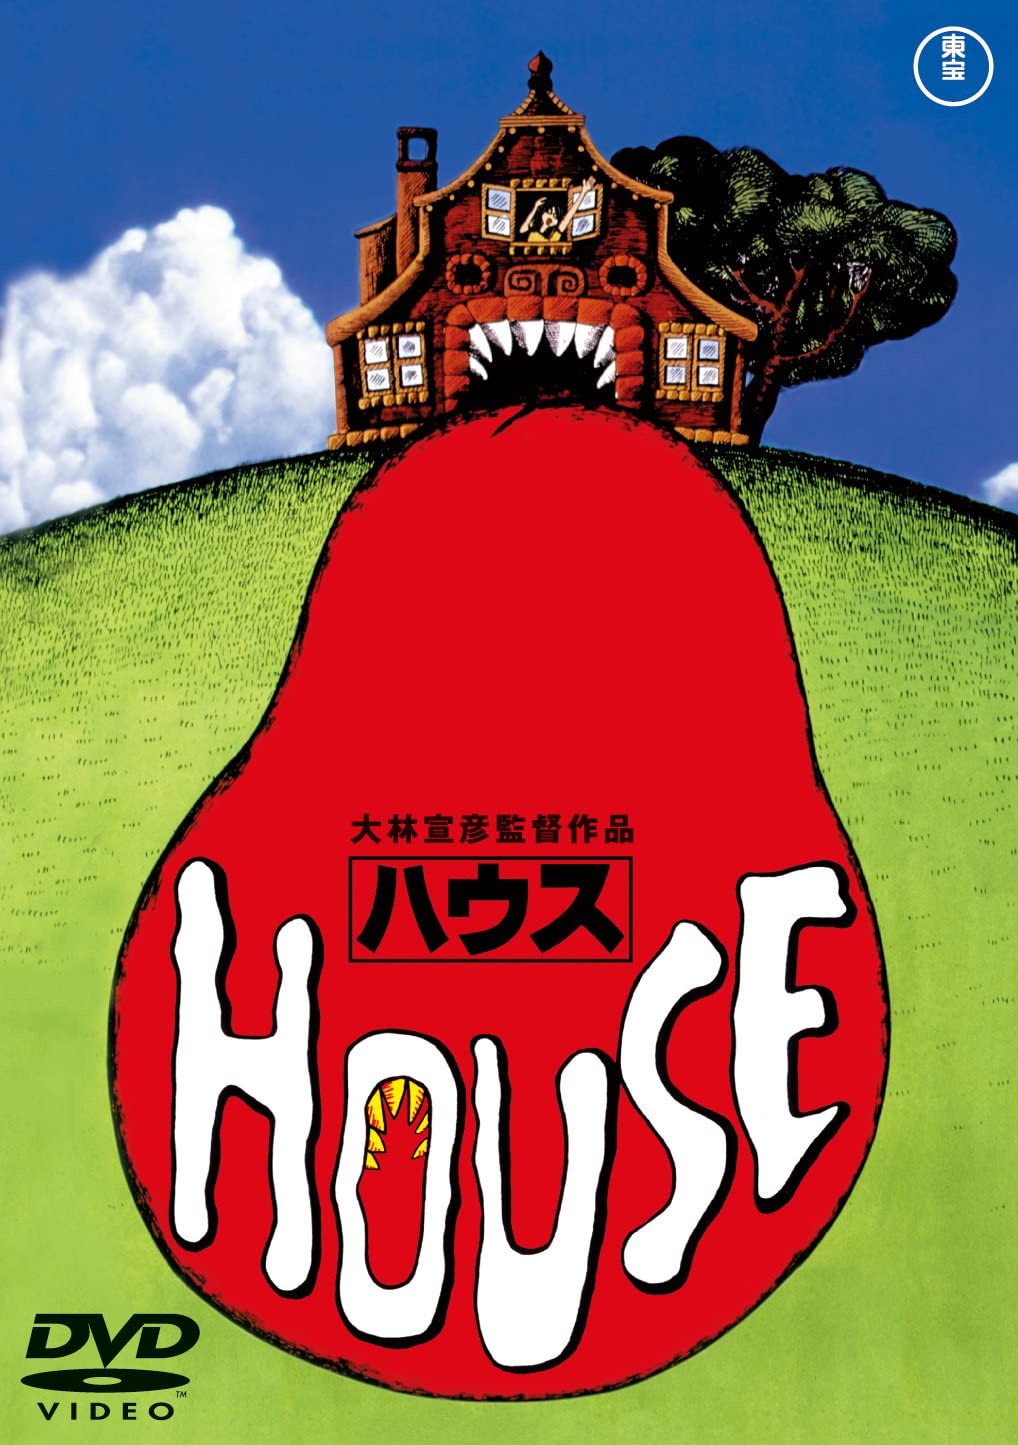 映画 House ハウス 1977年 ネタバレあらすじと結末 感想 起承転結でわかりやすく解説 Hmhm ふむふむ